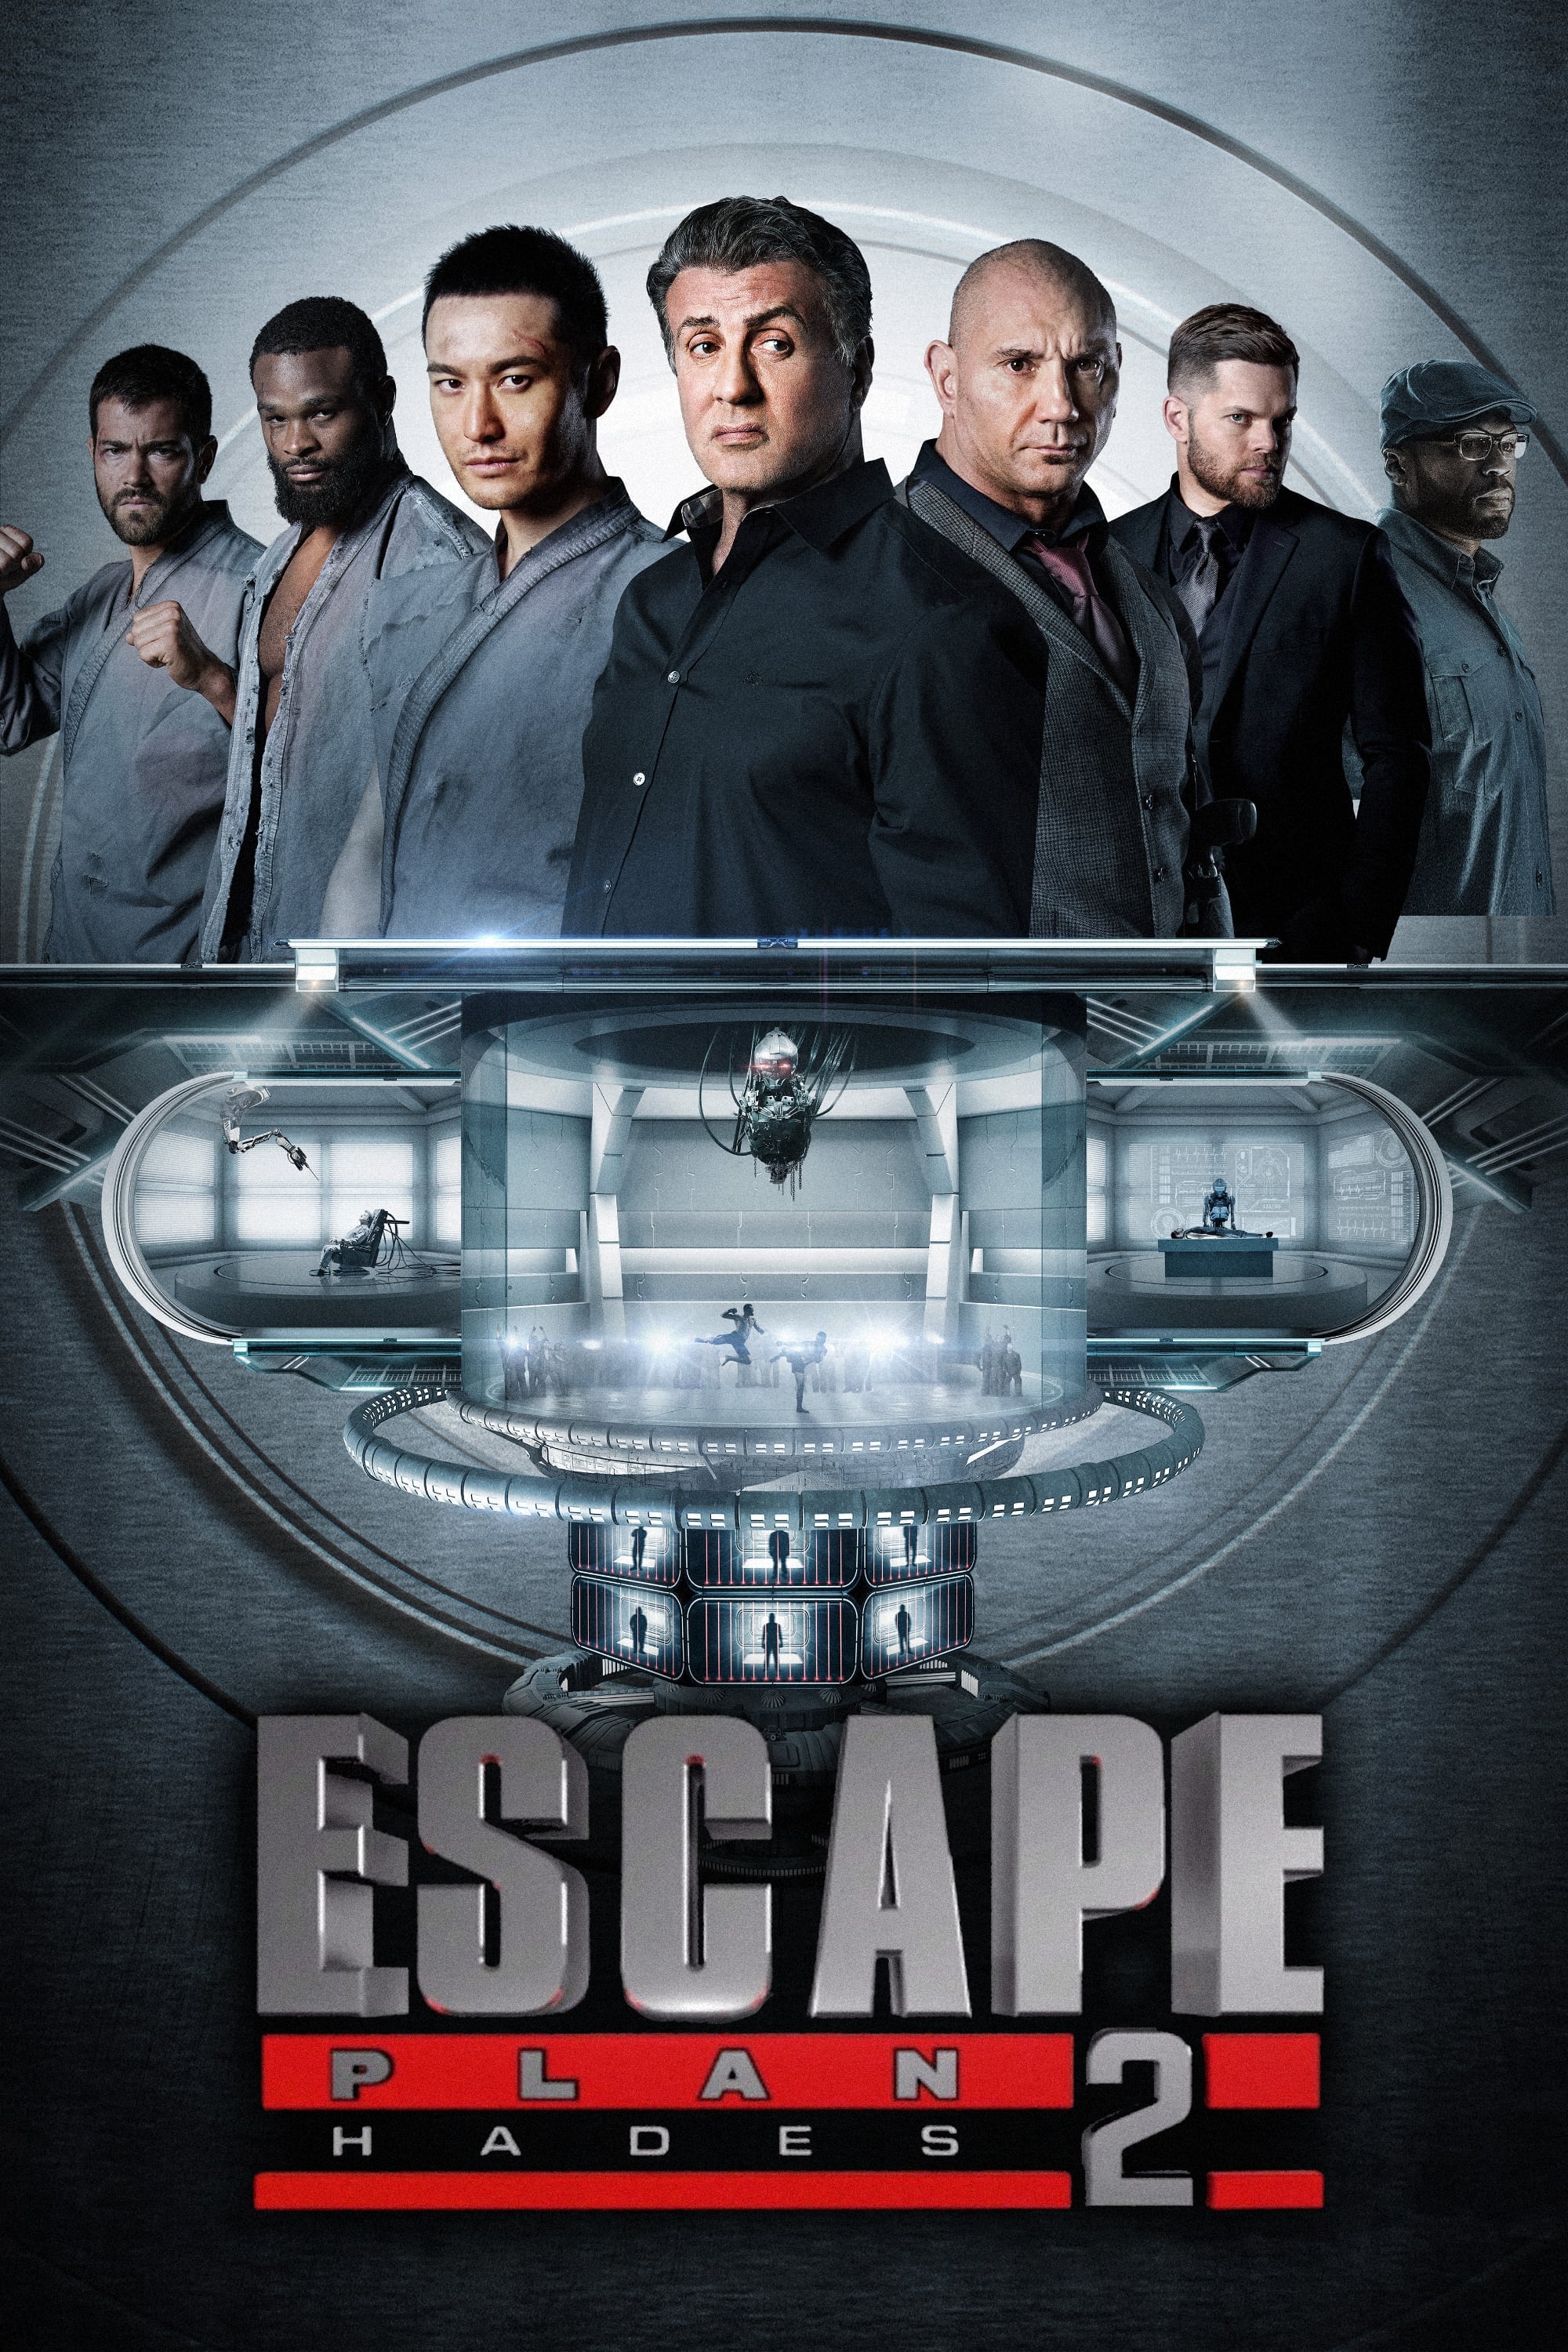 Escape Plan 2 / New Trailer Lands For ActionSequel 'Escape Plan 3